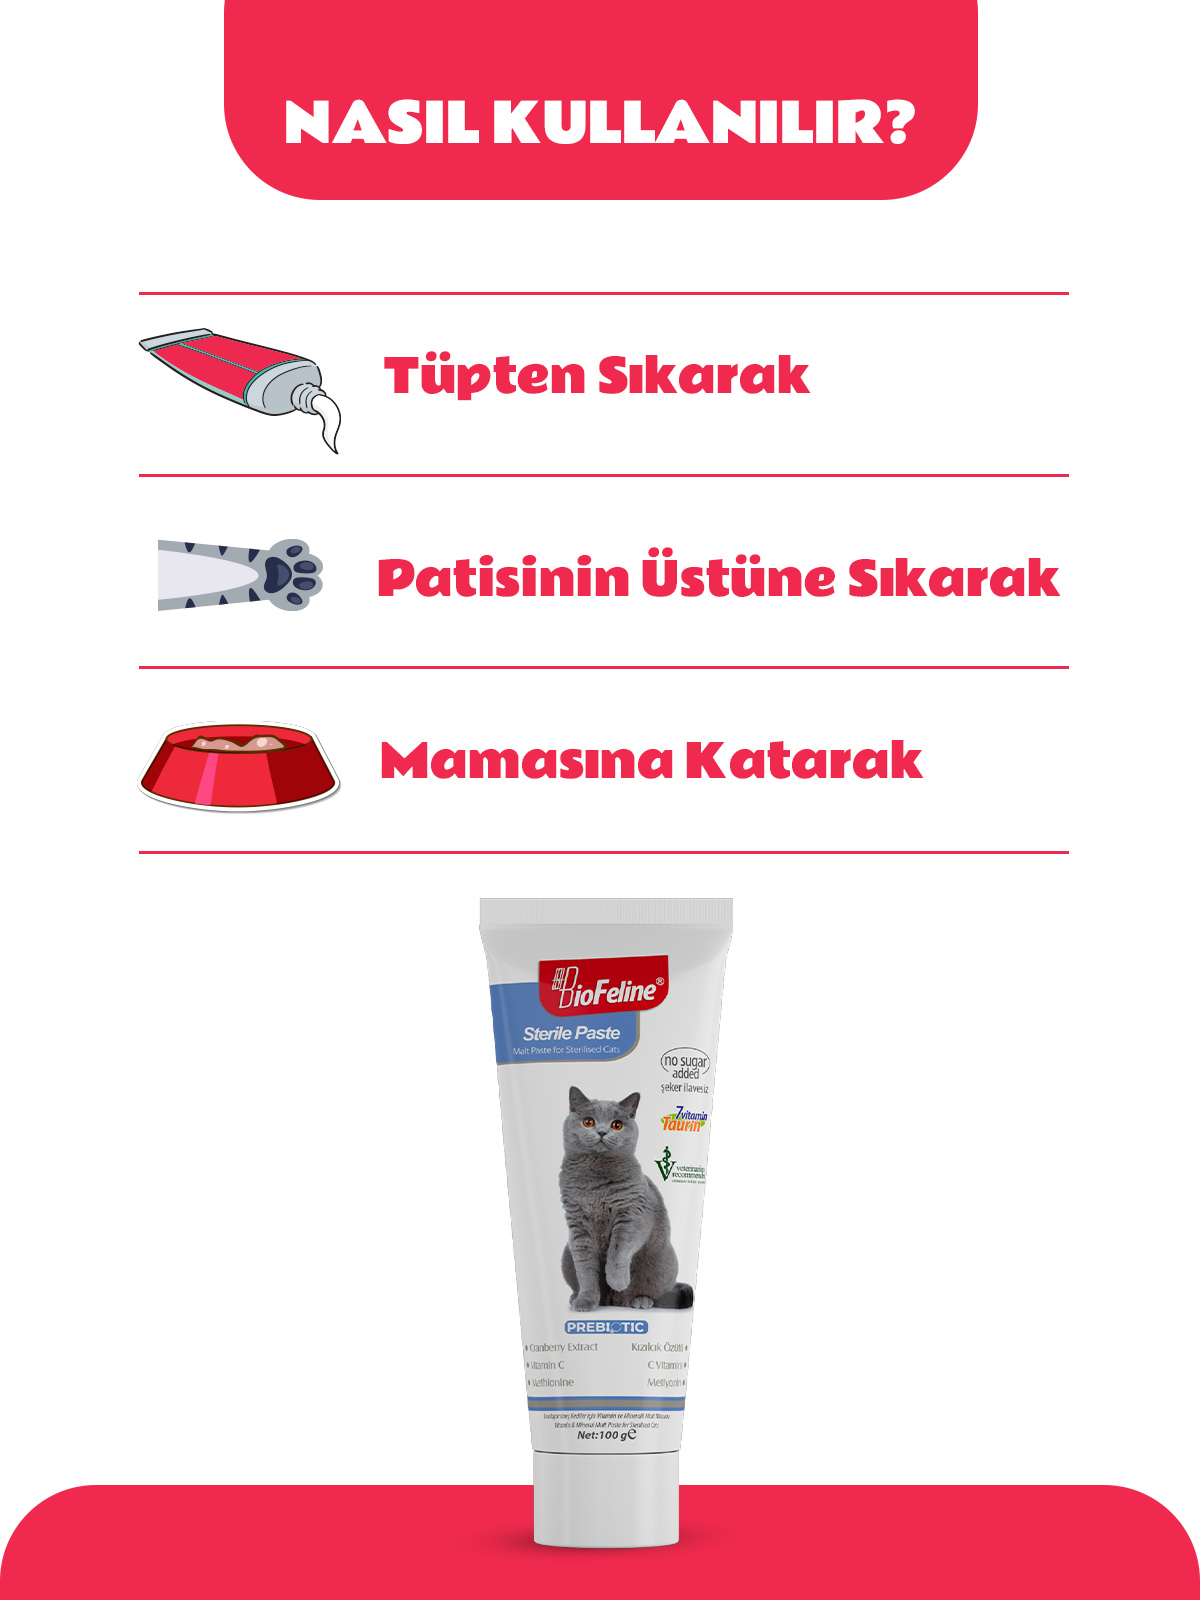 Sterile Paste 100g (Kısırlaştırılmış Kedilere Özel Bağışıklık Destekleyici ve Tüy Yumağı Önleyici Malt Macun)